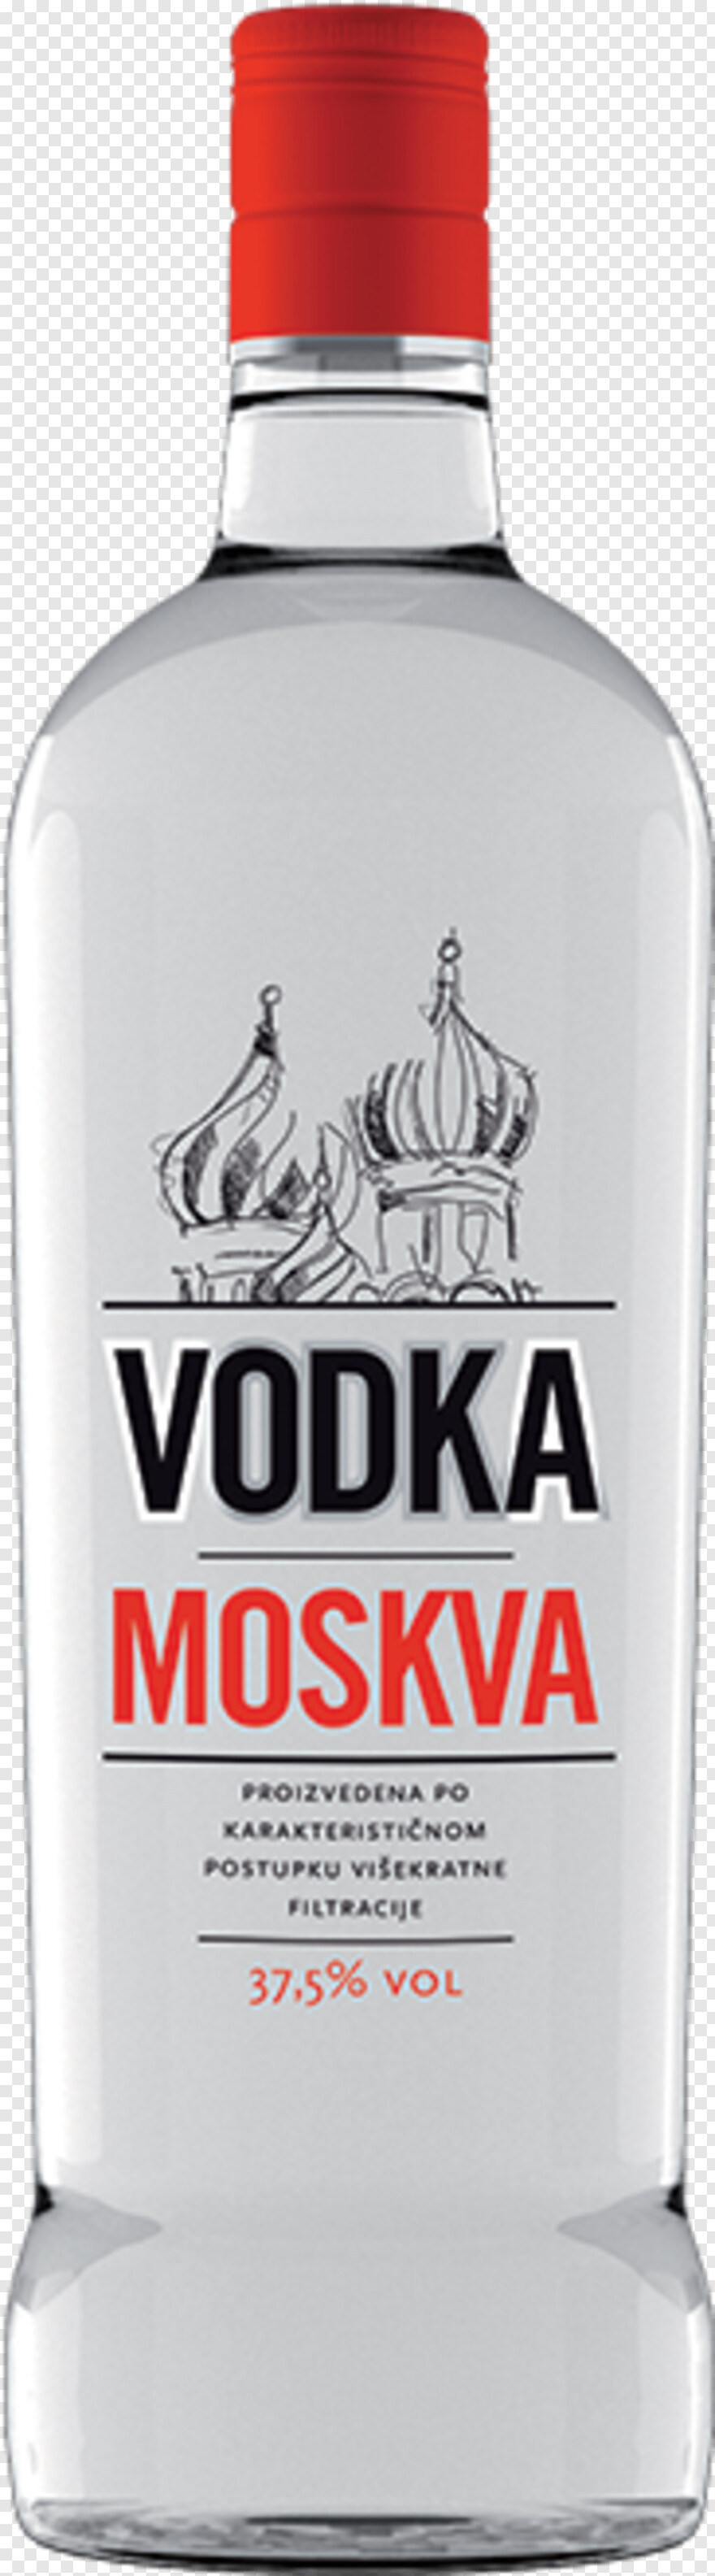 vodka # 593556